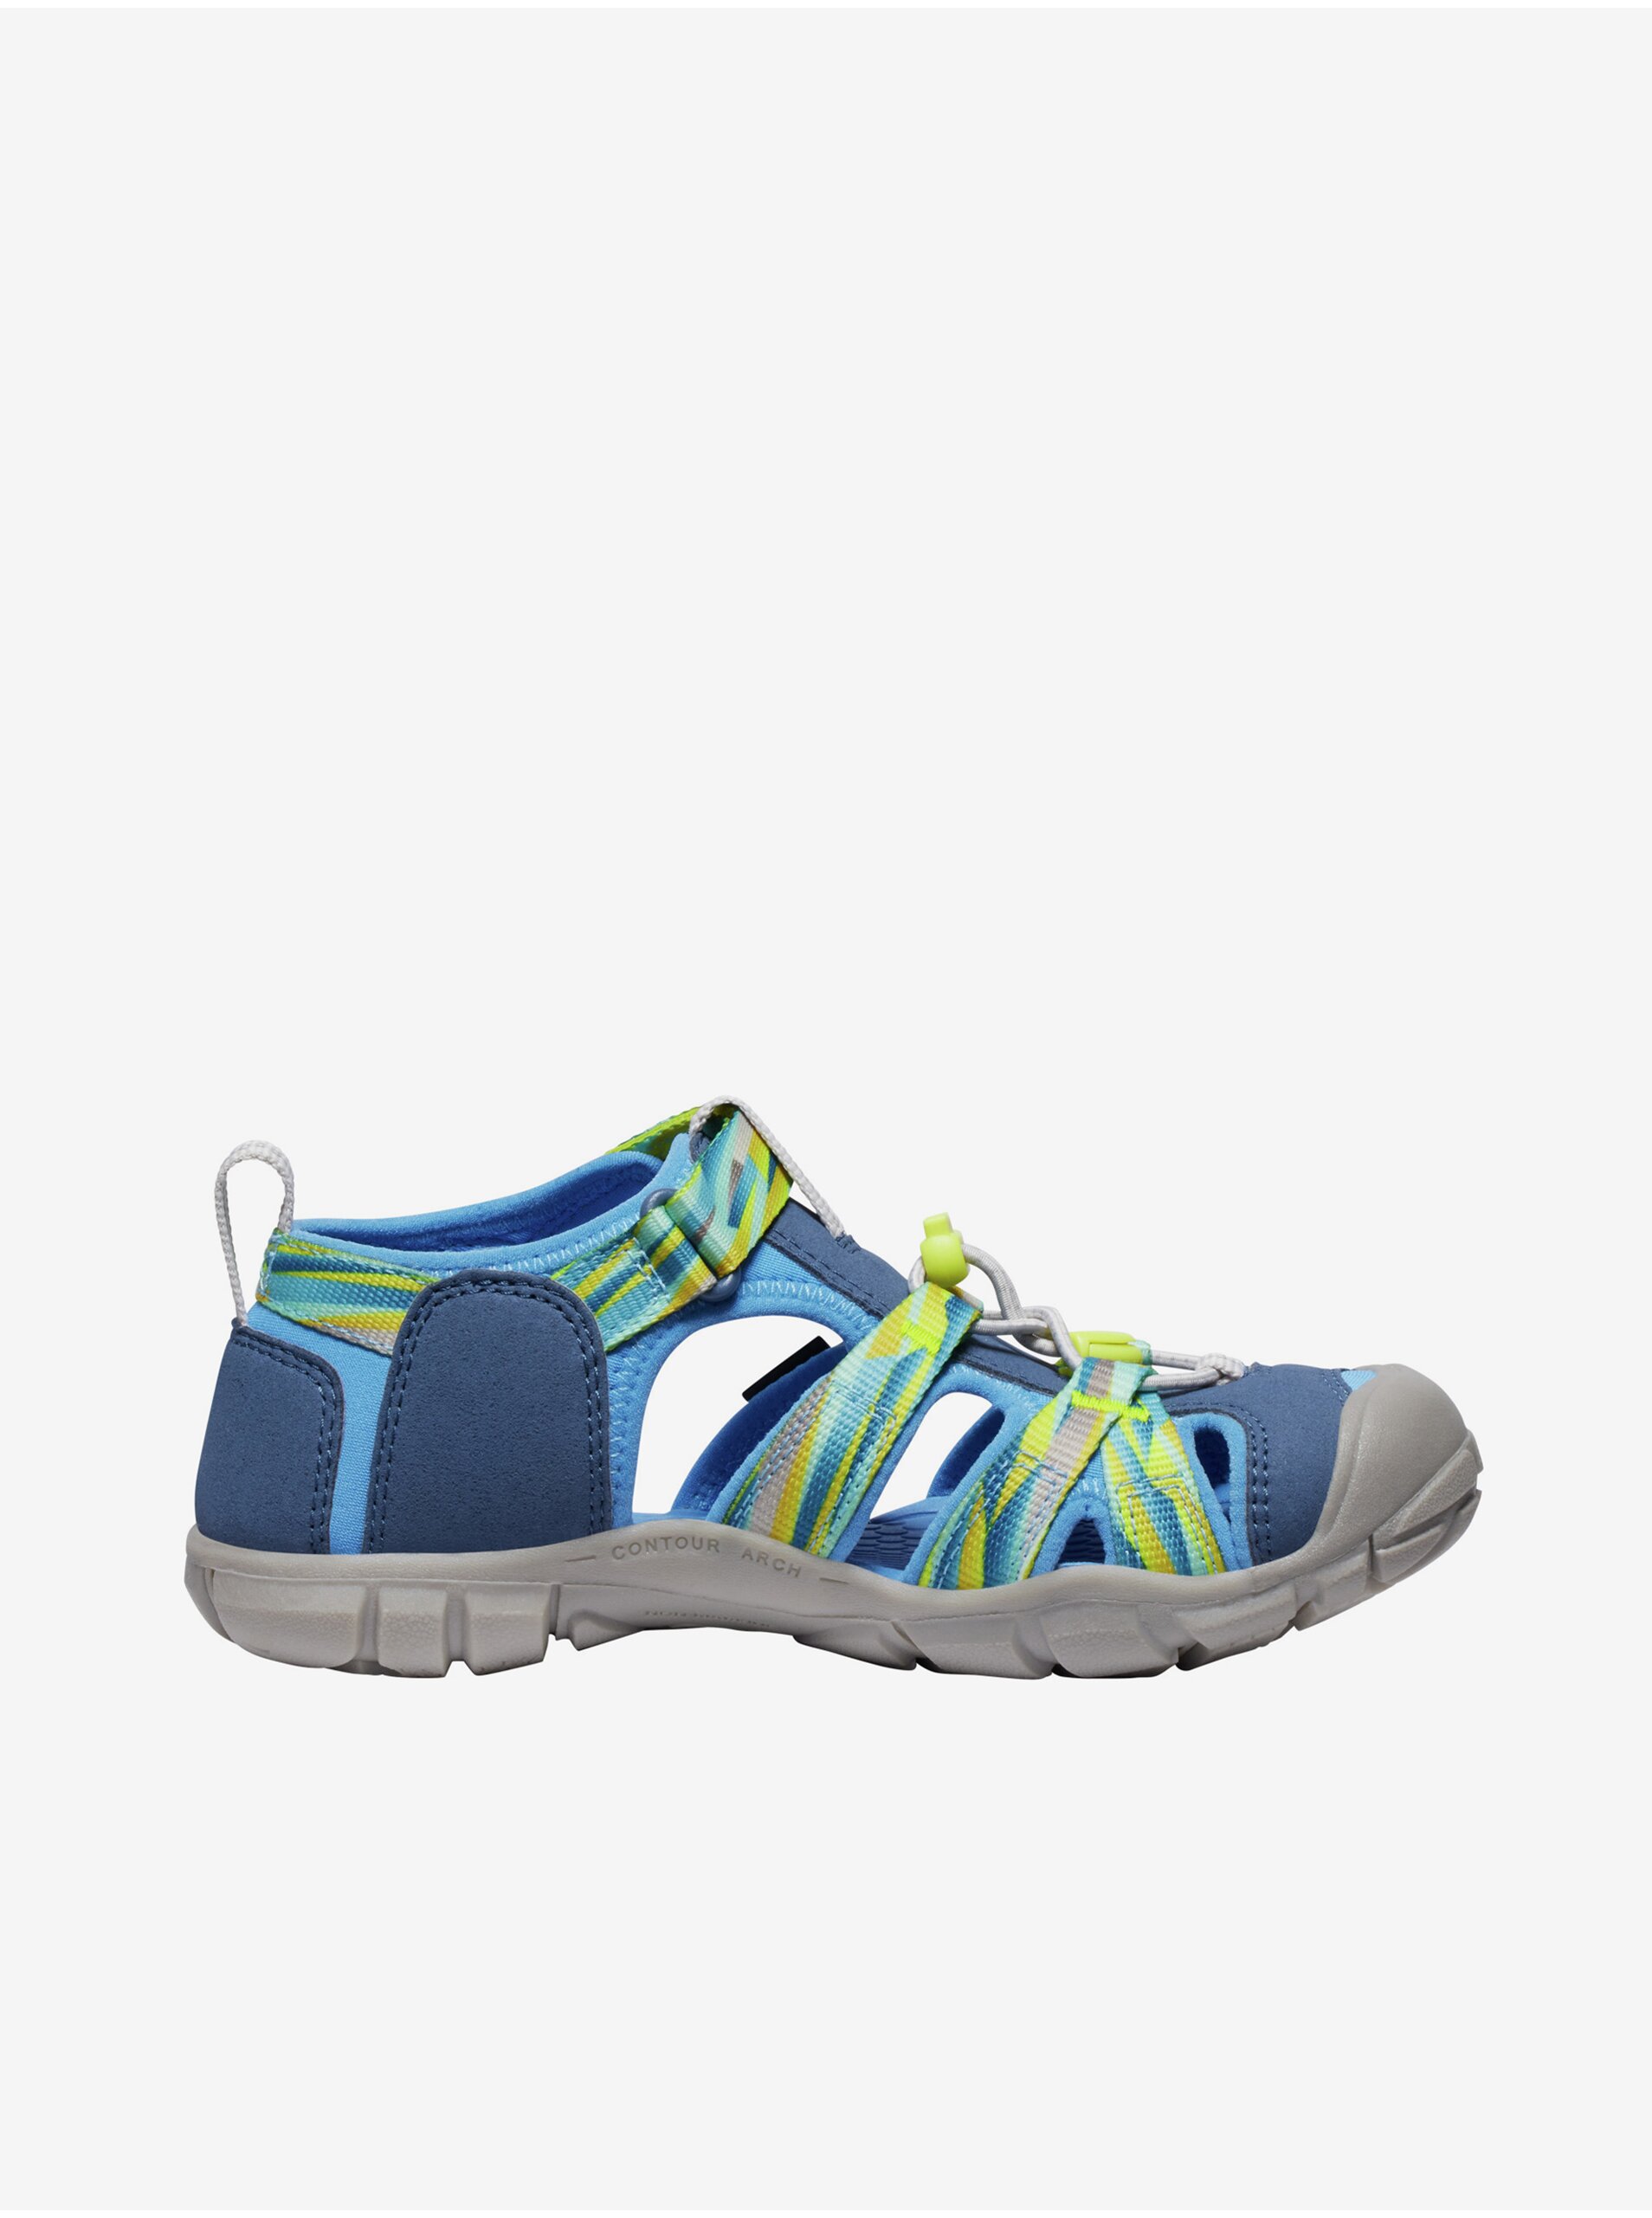 Levně Modré dětské outdoorové sandály s koženými detaily Keen Seacamp II CNX